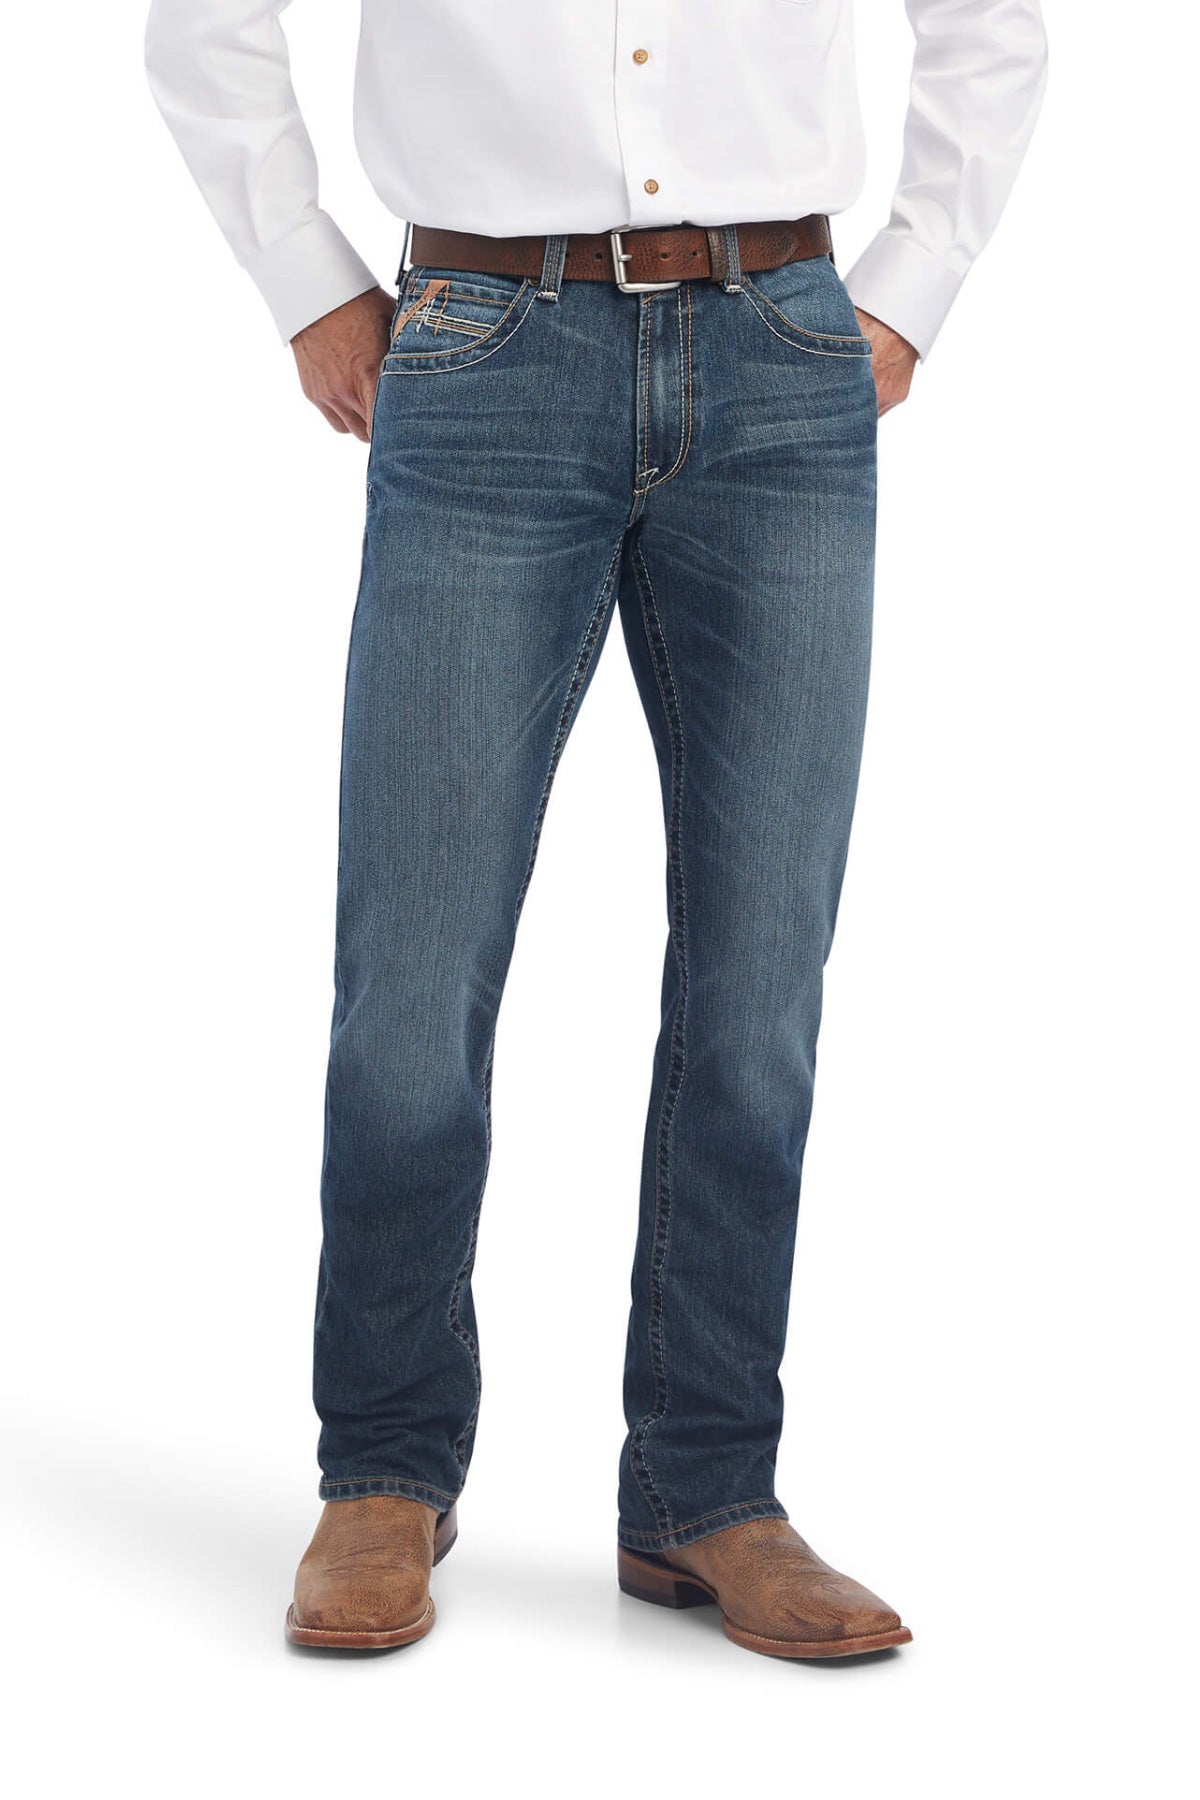 Jeans Vaquero Wrangler H936atw Color Azul Slim Fit Para Hombre